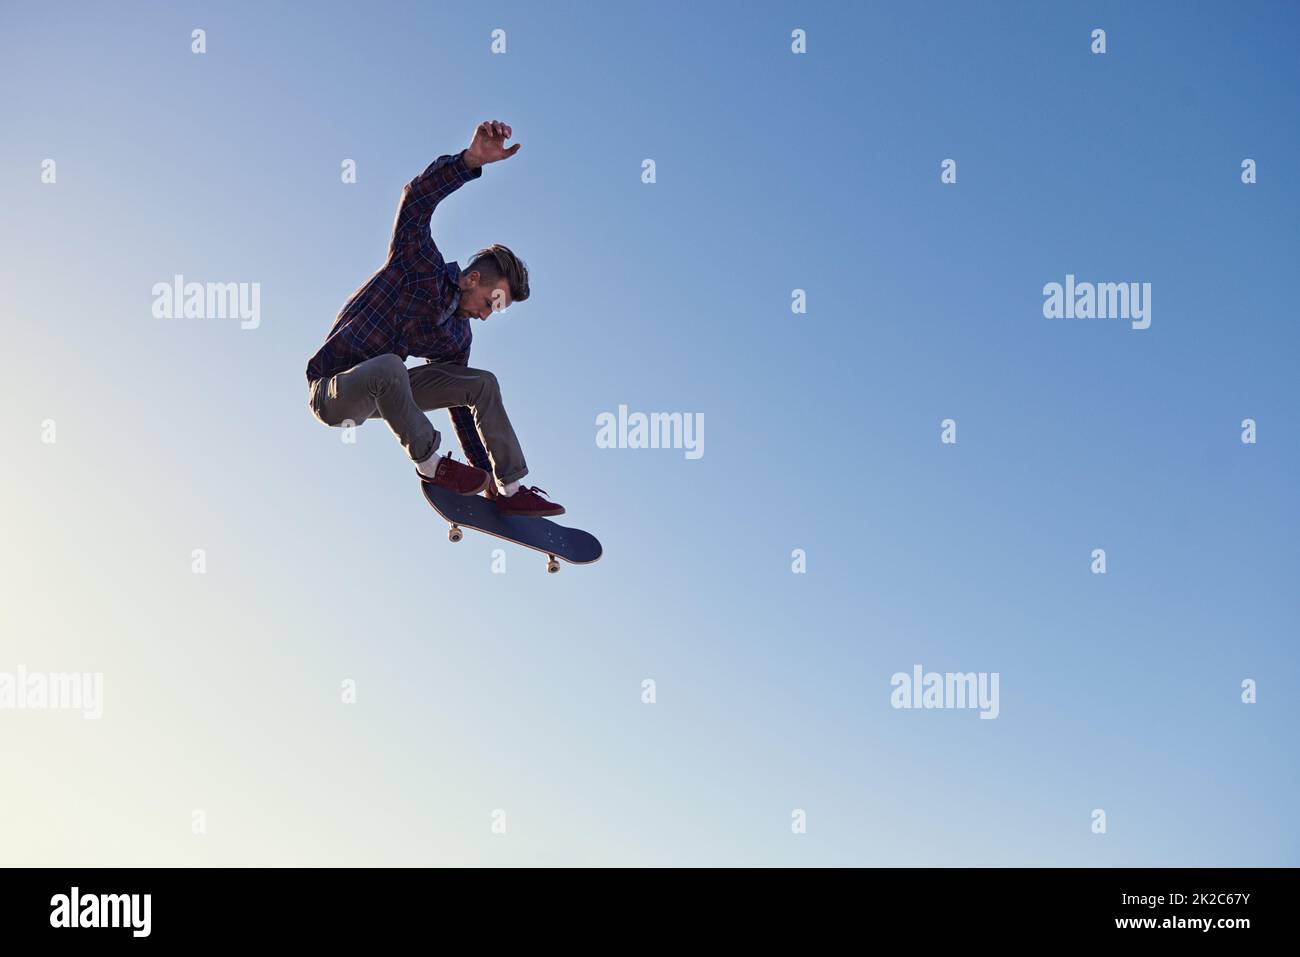 Trucos de skate fotografías e imágenes de alta resolución - Página 5 - Alamy